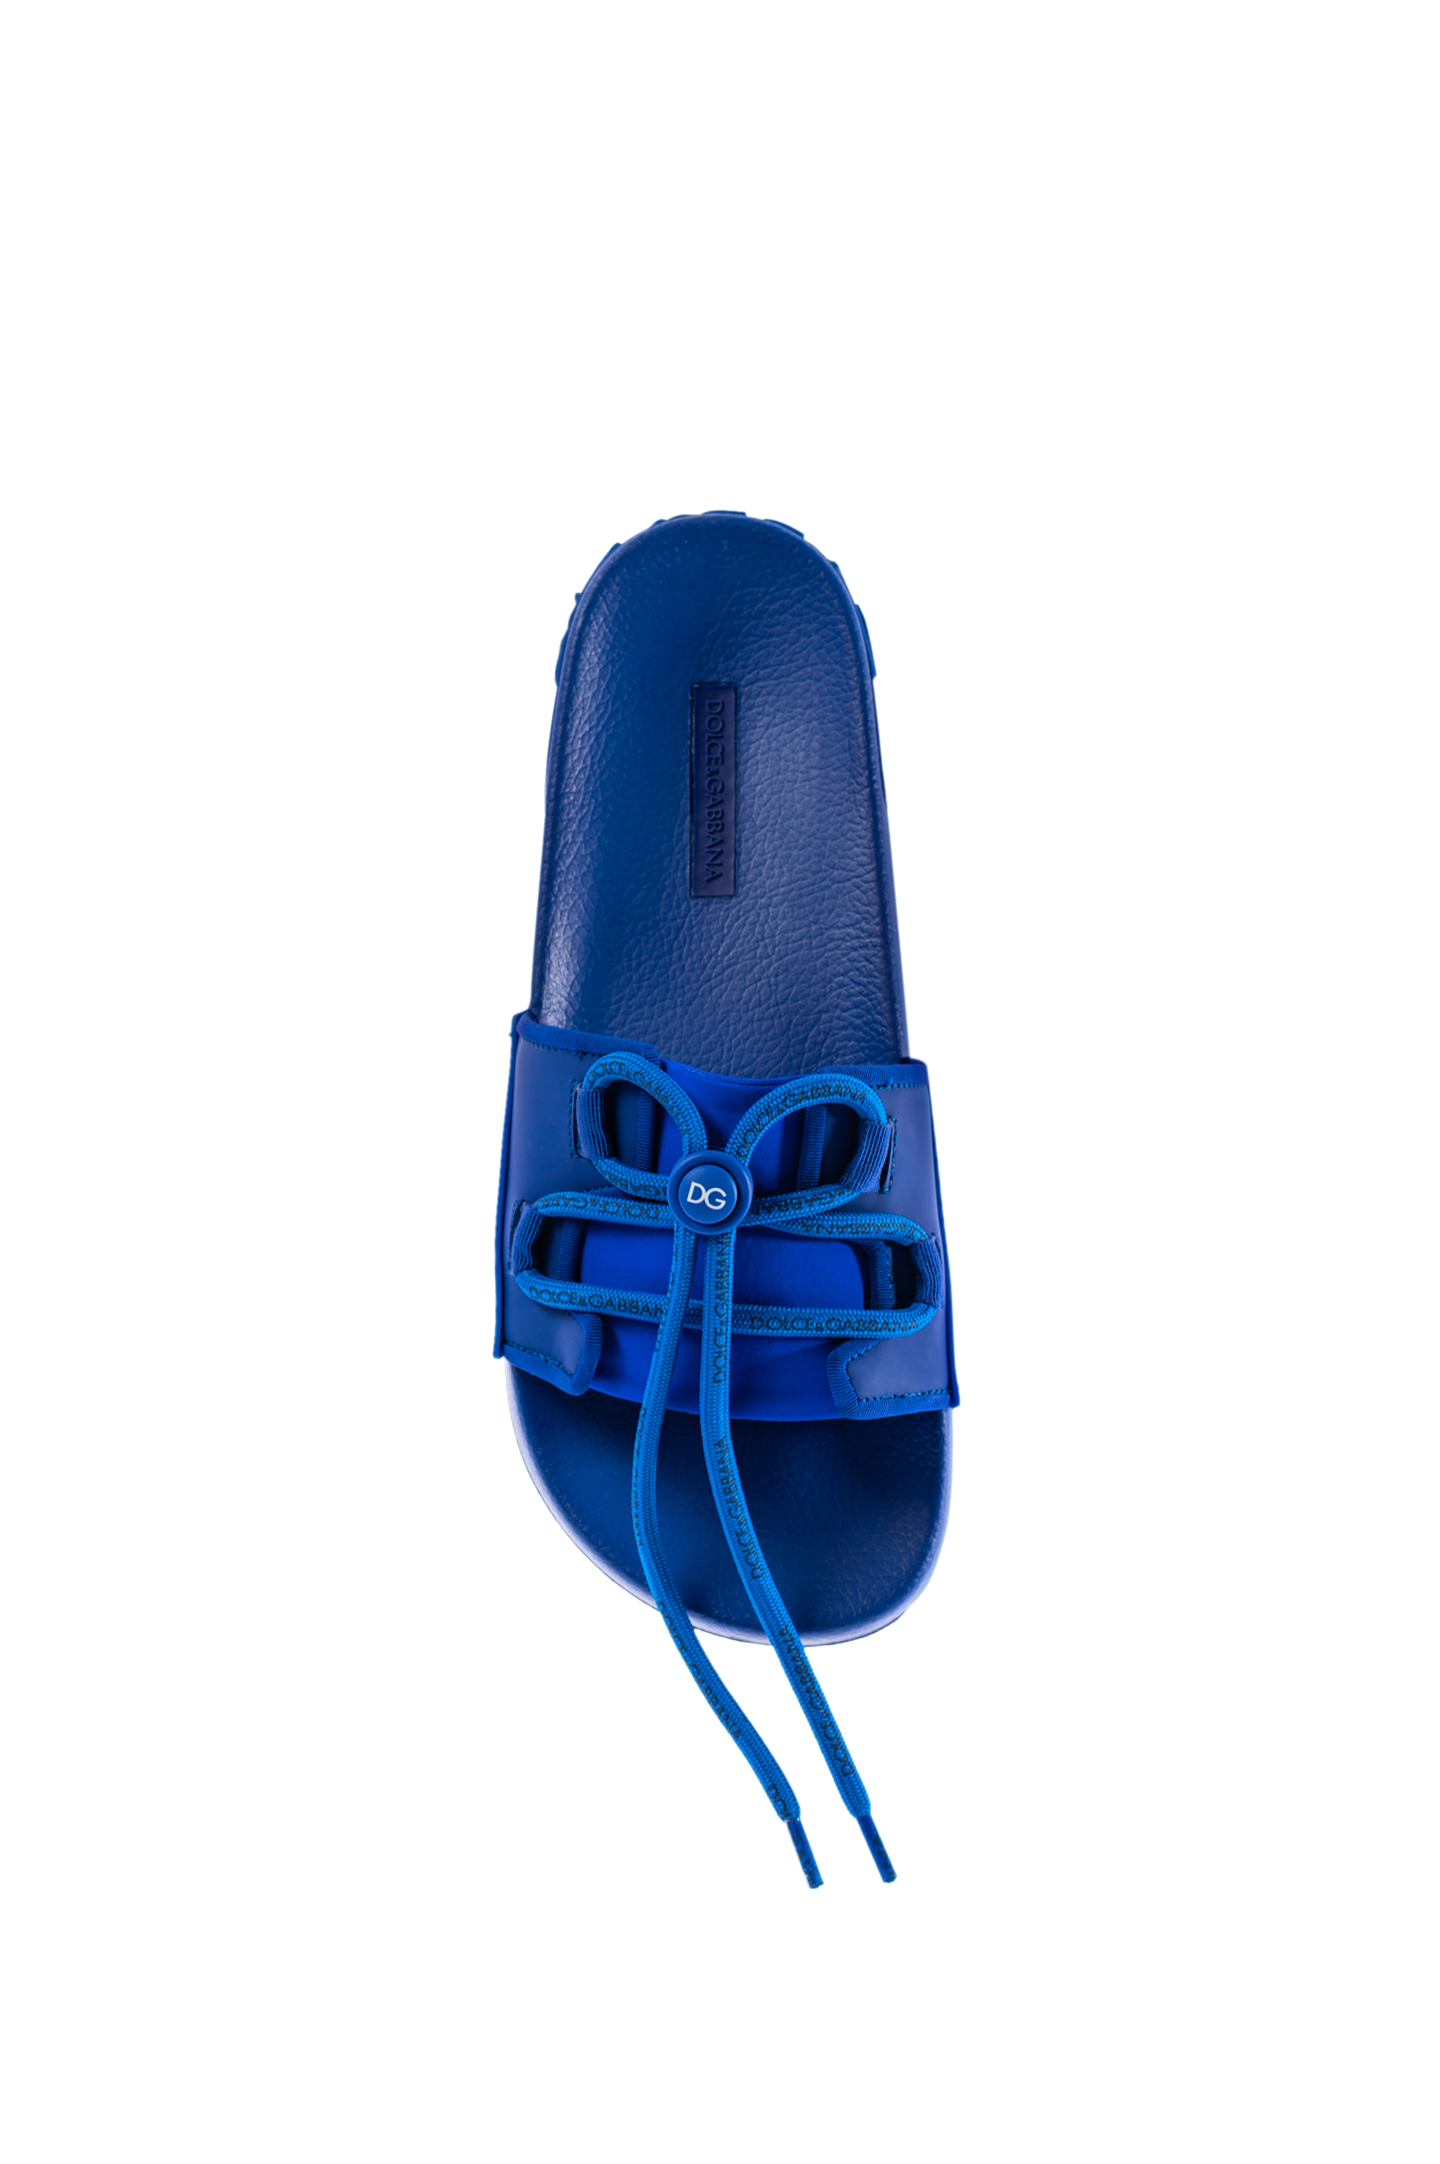 Пантолеты DOLCE & GABBANA CS1751 AJ942, цвет: Синий, Мужской